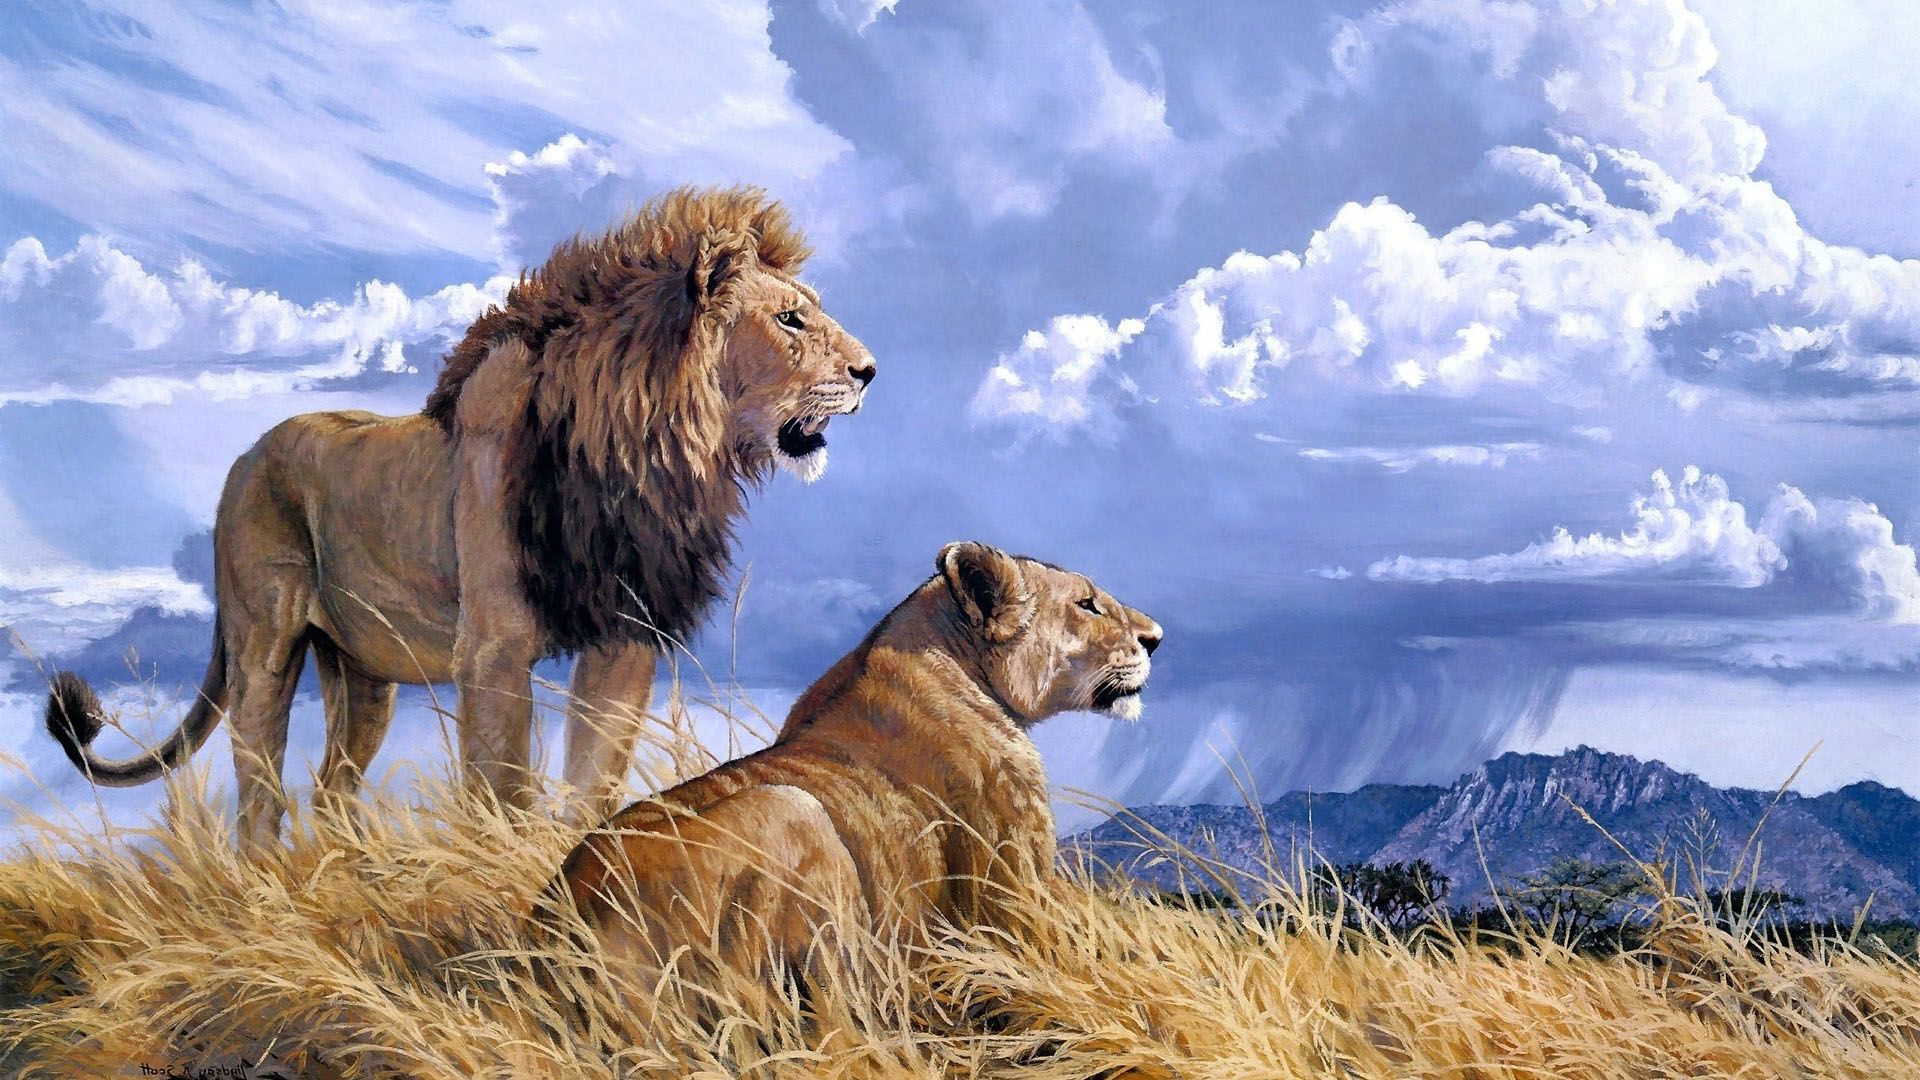 leone full hd wallpaper,natura,leone,leone masai,felidae,animale terrestre